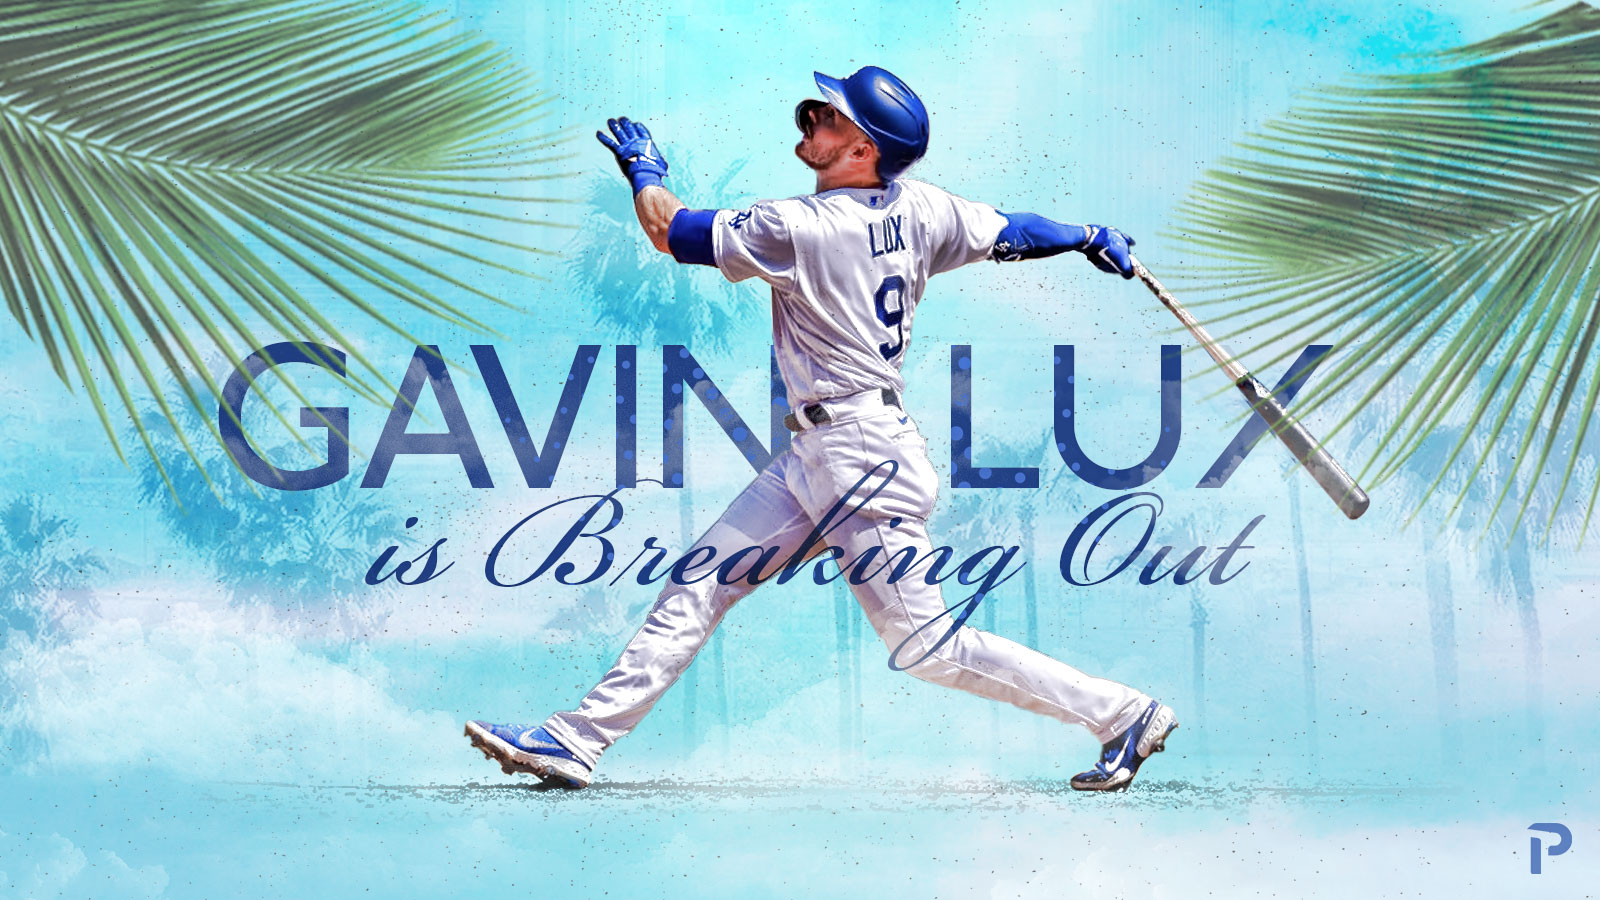 Dodgers 2022 season in review: Gavin Lux - True Blue LA